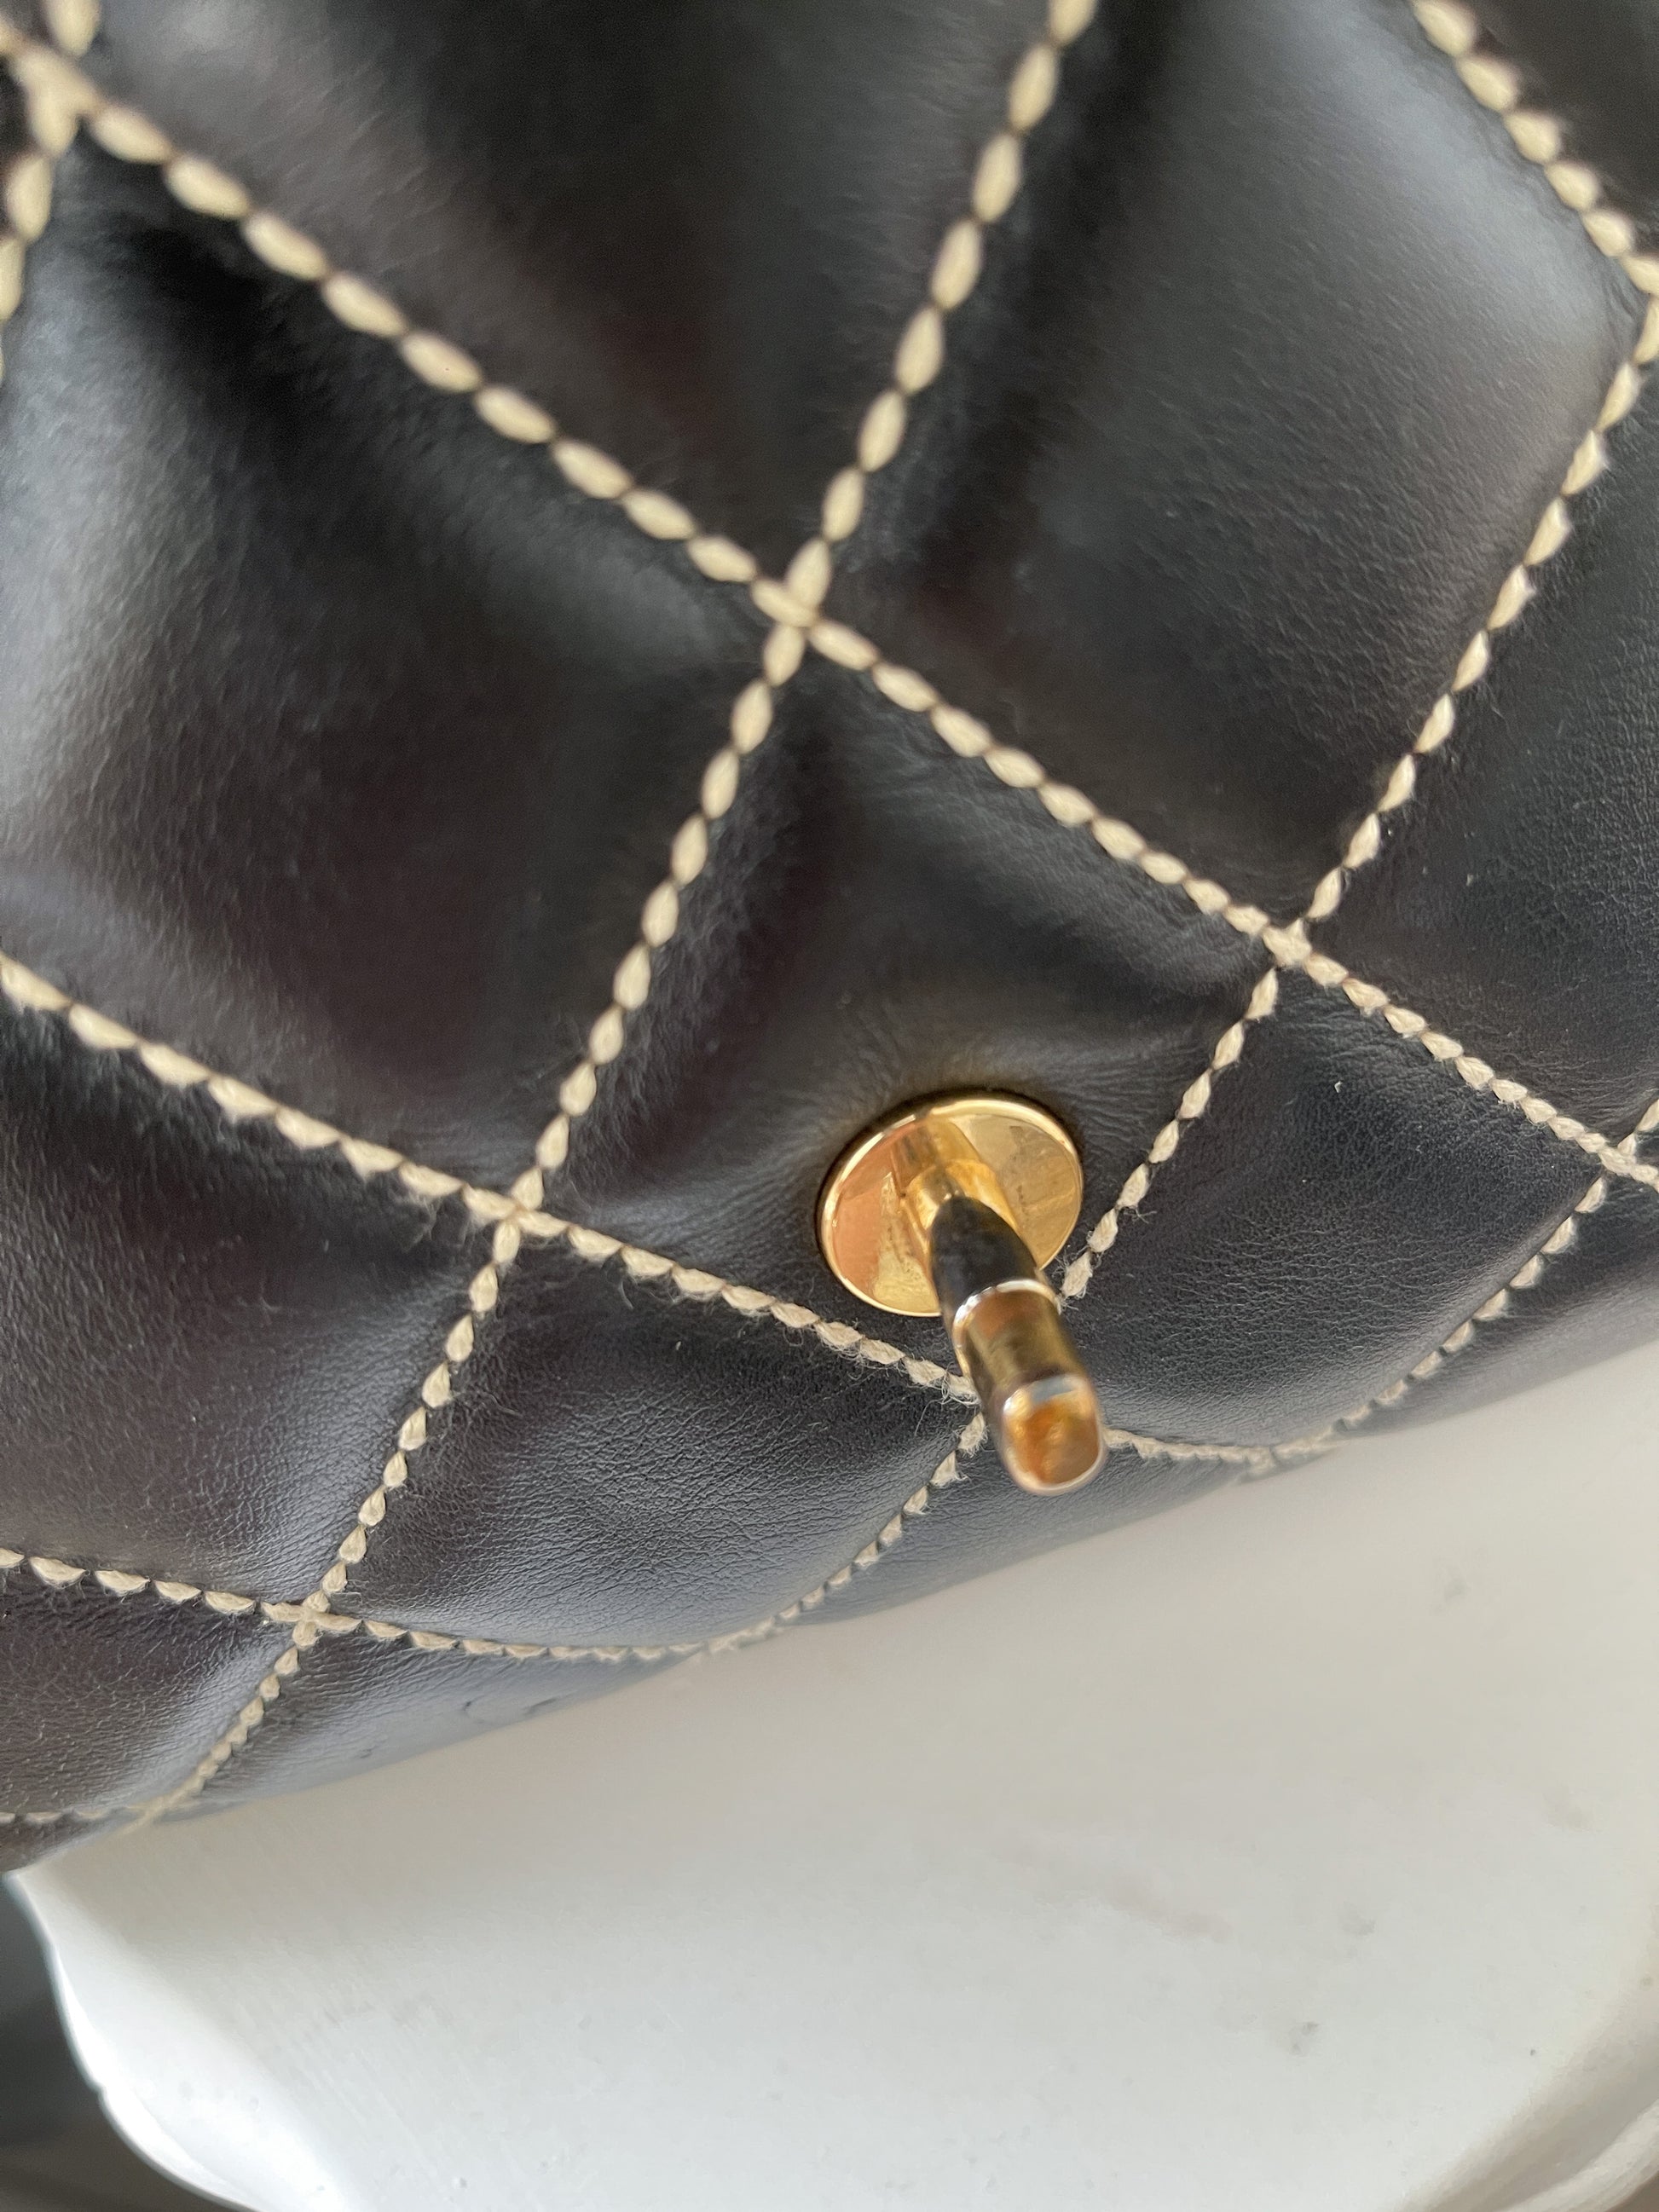 Vintage CHANEL Wild Stitch Top Handle Flap Bag – Le Plaisir Archive